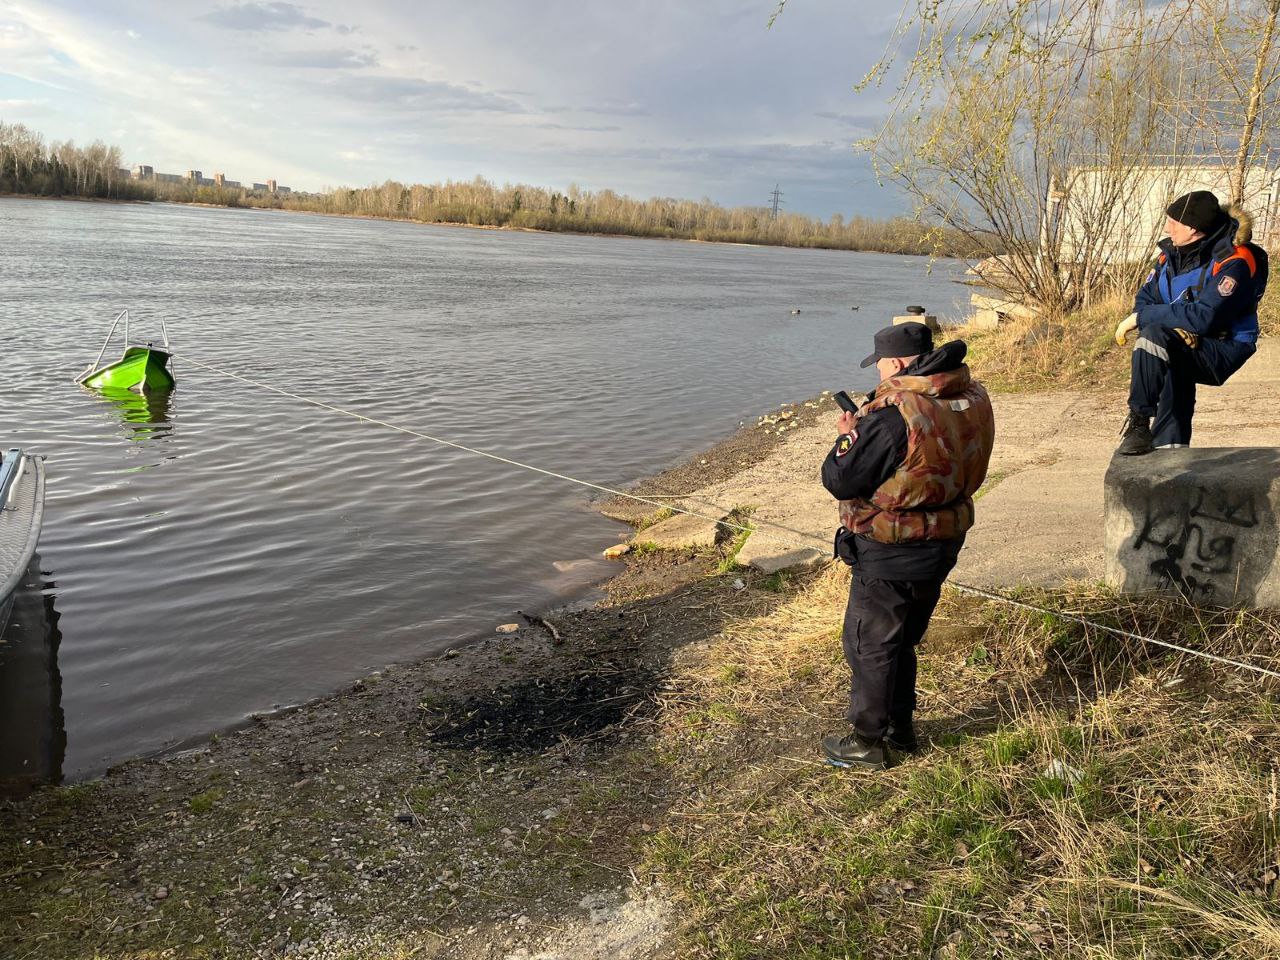 В Красноярске не смогли найти тело водителя катера, затонувшего после столкновения с баржей